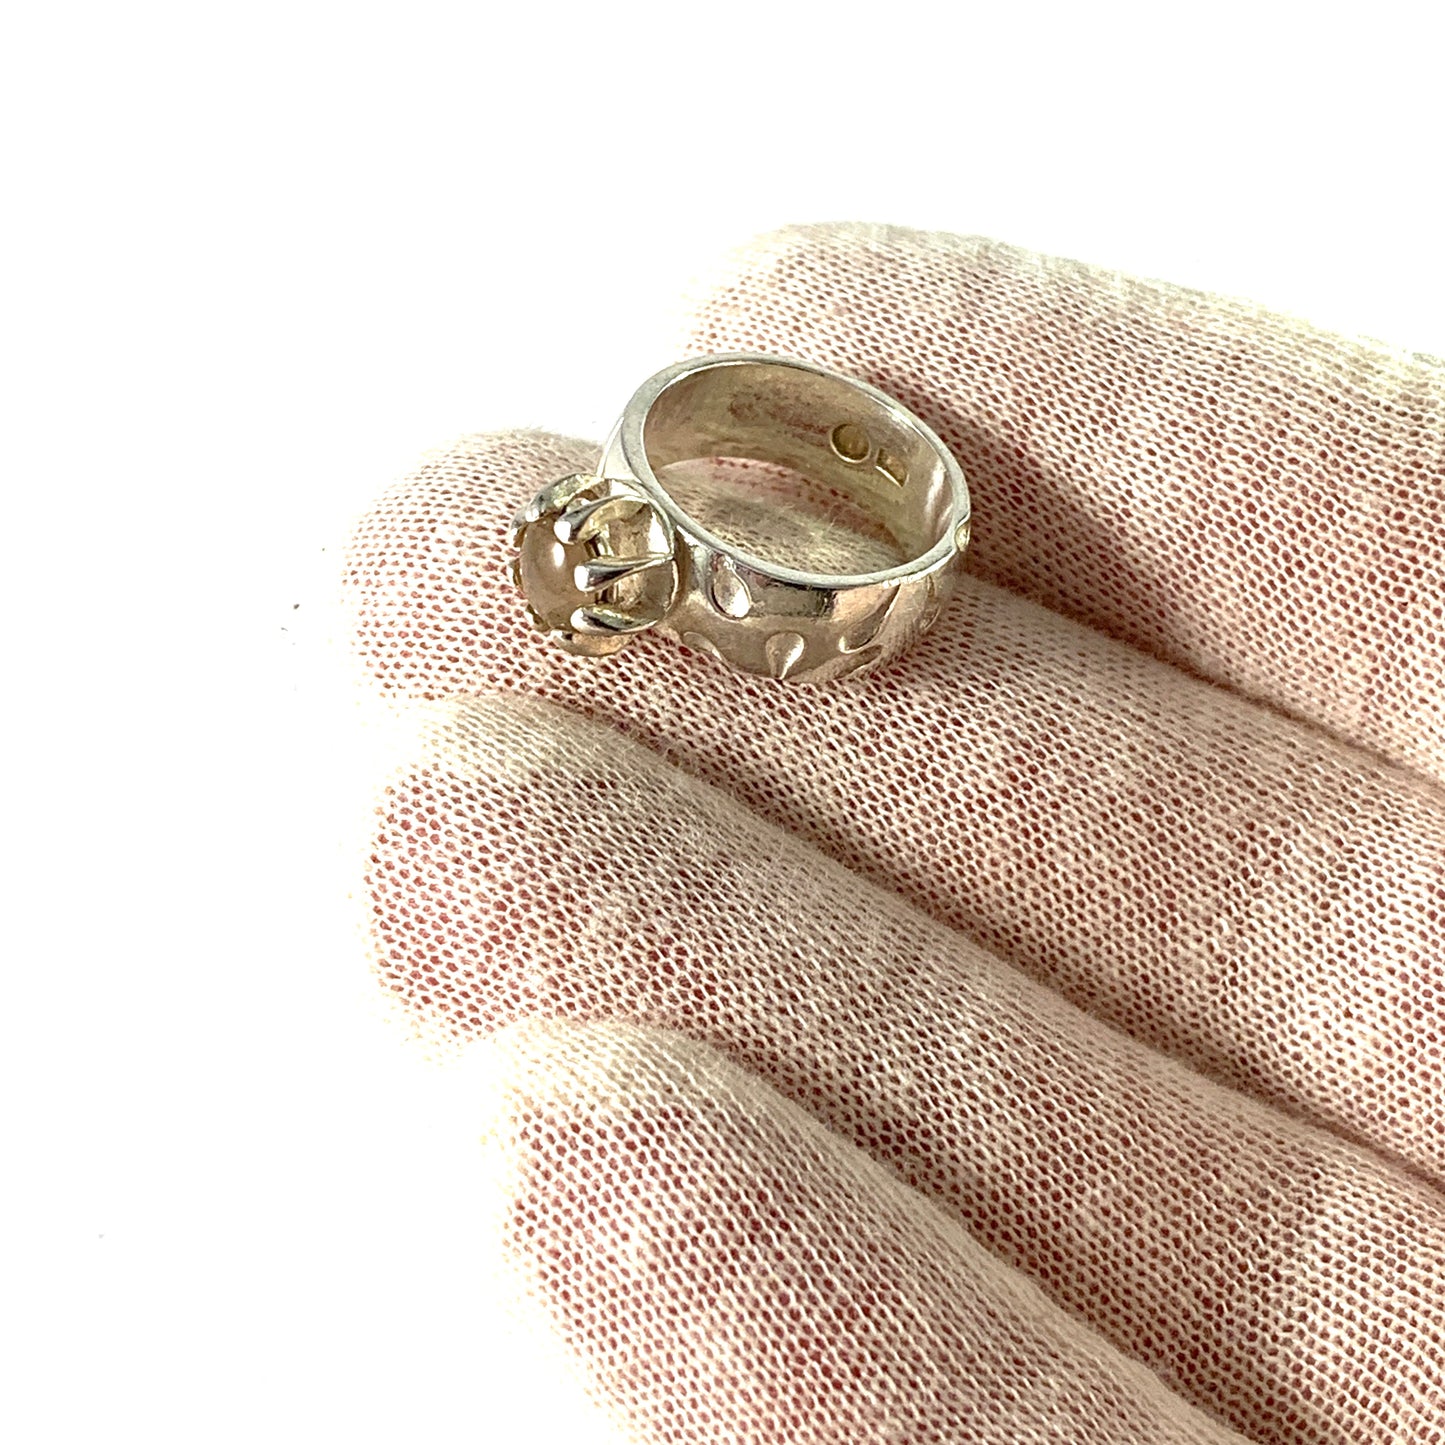 Kalevala Koru, Finland. Vintage Sterling Silver Moonstone Ring